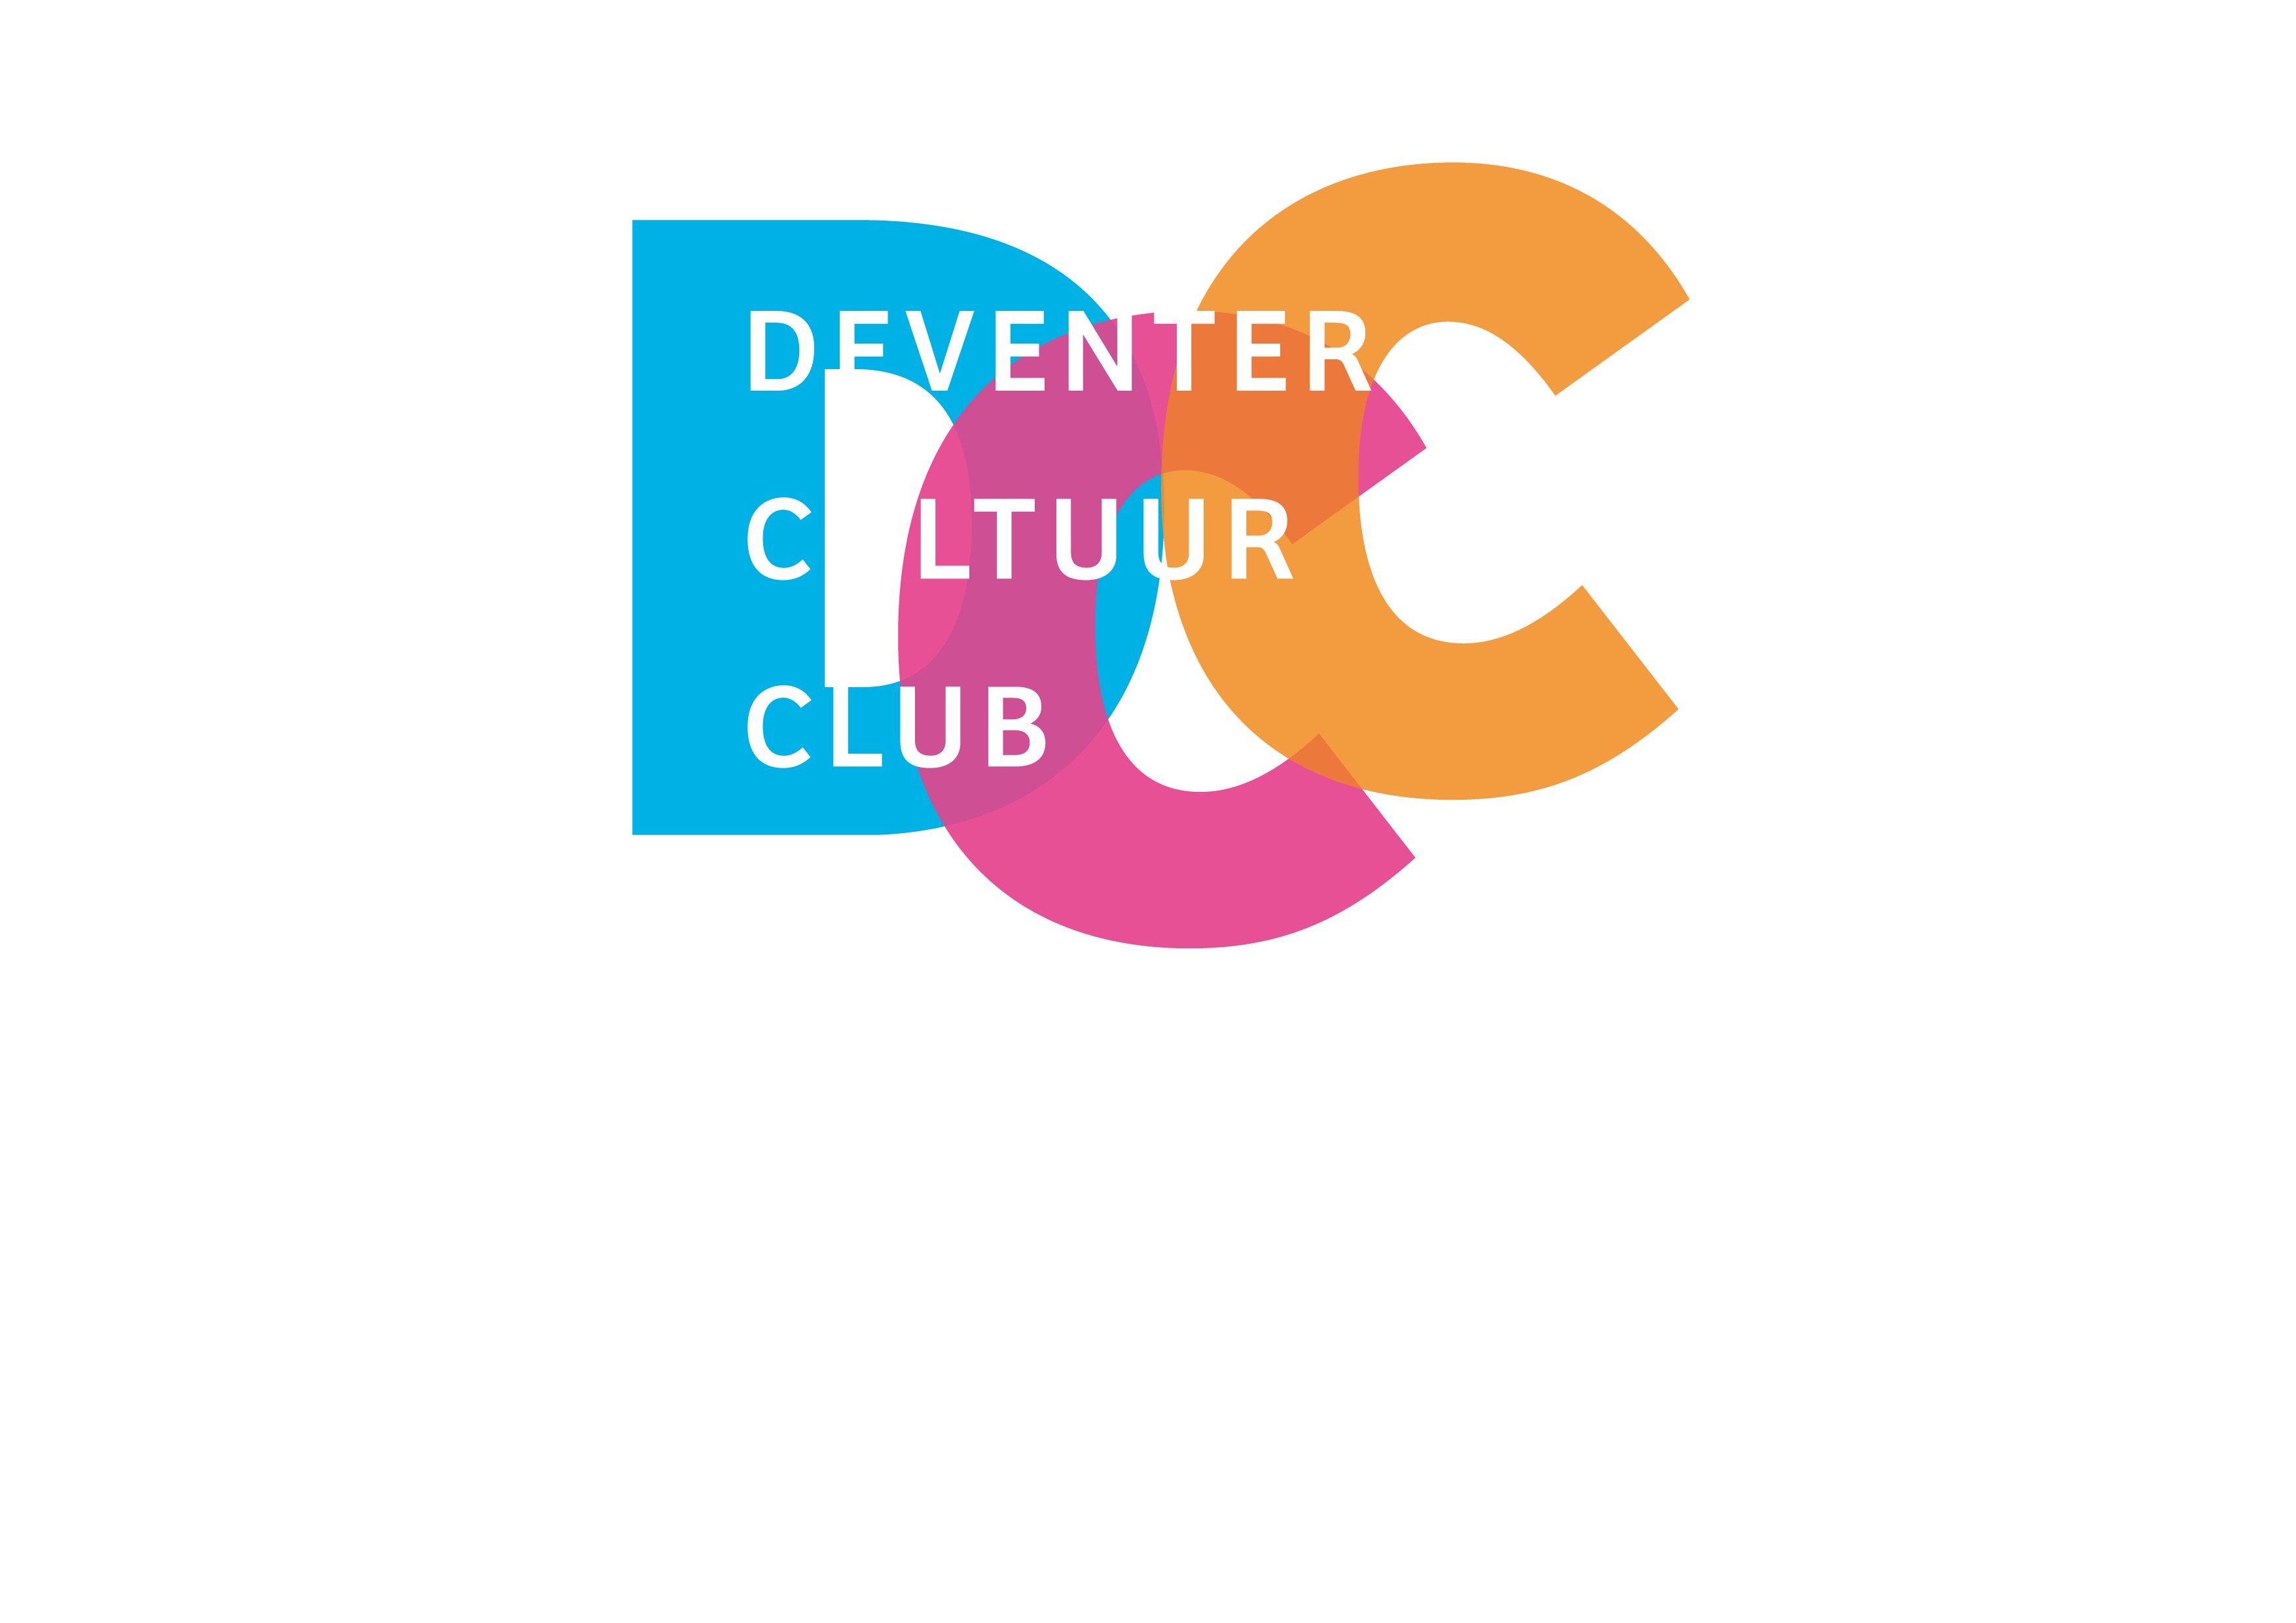 (c) Deventercultuurclub.nl